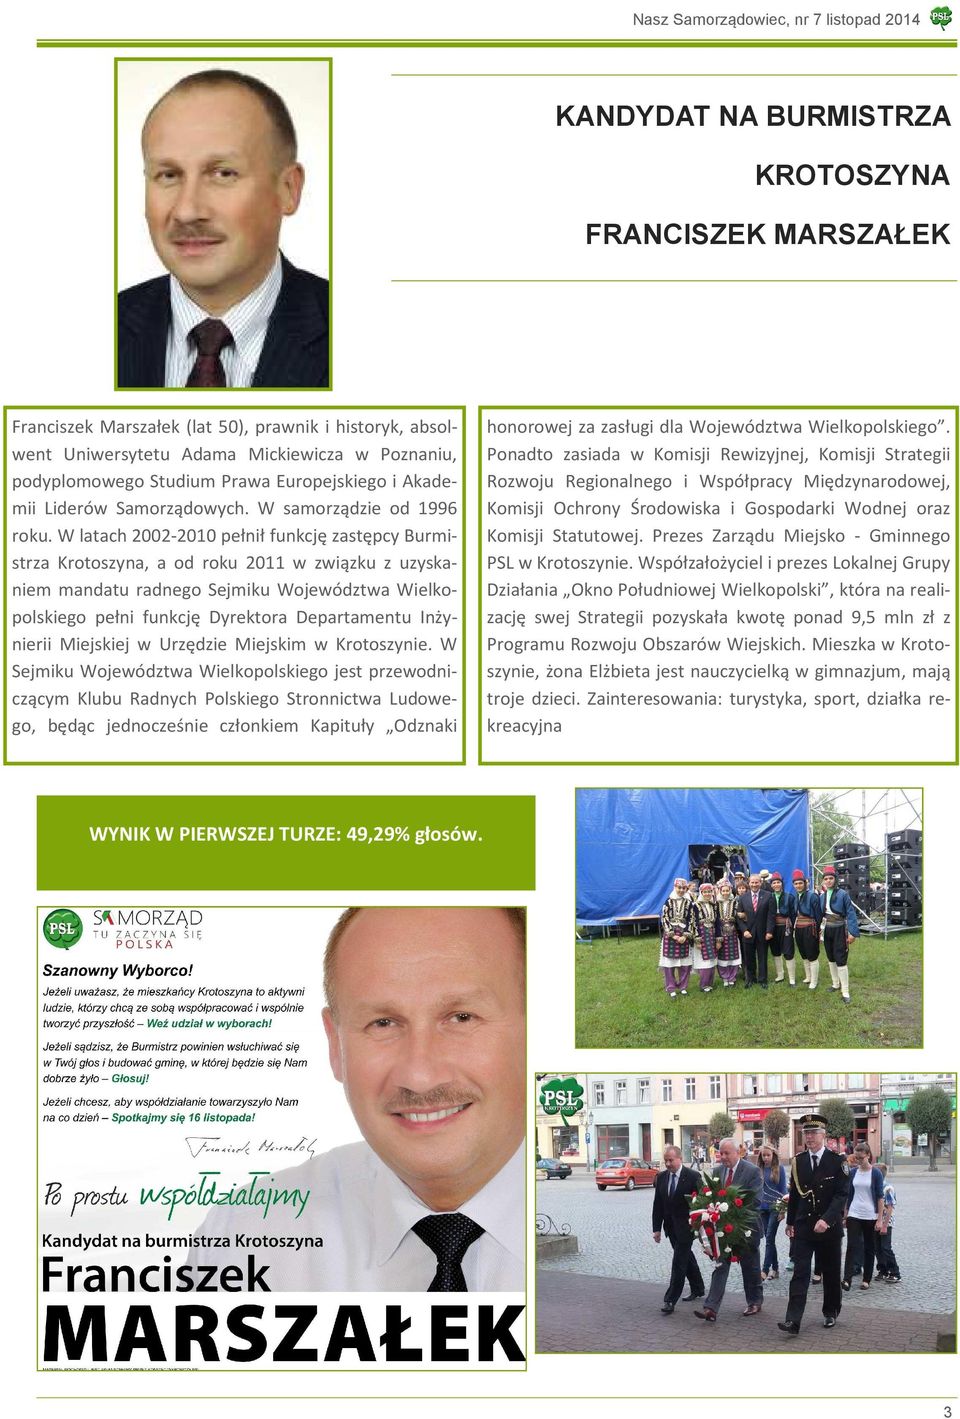 W latach 2002-2010 pełnił funkcję zastępcy Burmistrza Krotoszyna, a od roku 2011 w związku z uzyskaniem mandatu radnego Sejmiku Województwa Wielkopolskiego pełni funkcję Dyrektora Departamentu